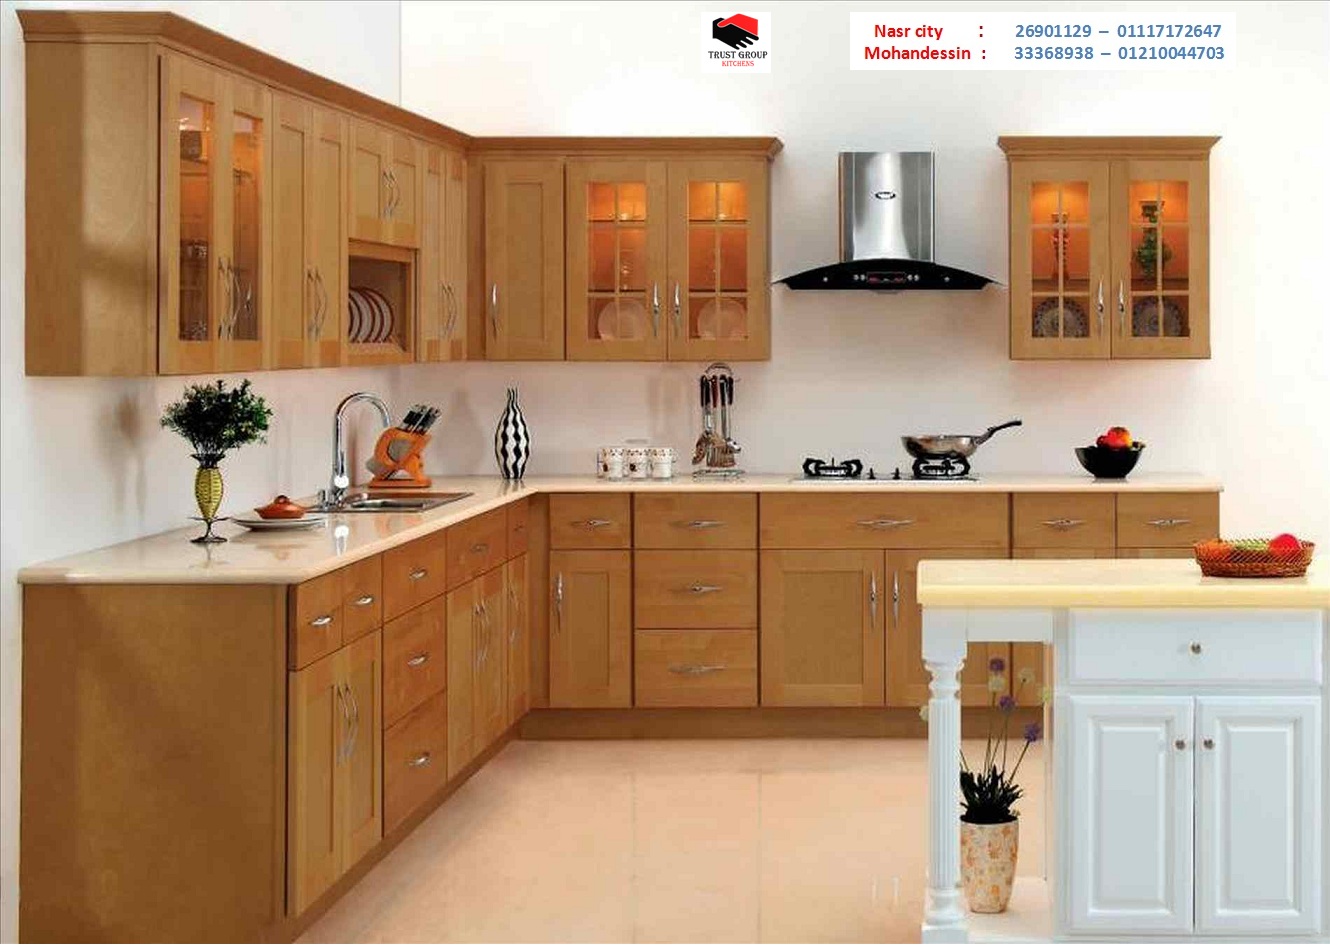 kitchens   Egypt  ( للاتصال   01210044703 )        P_810e7wph4